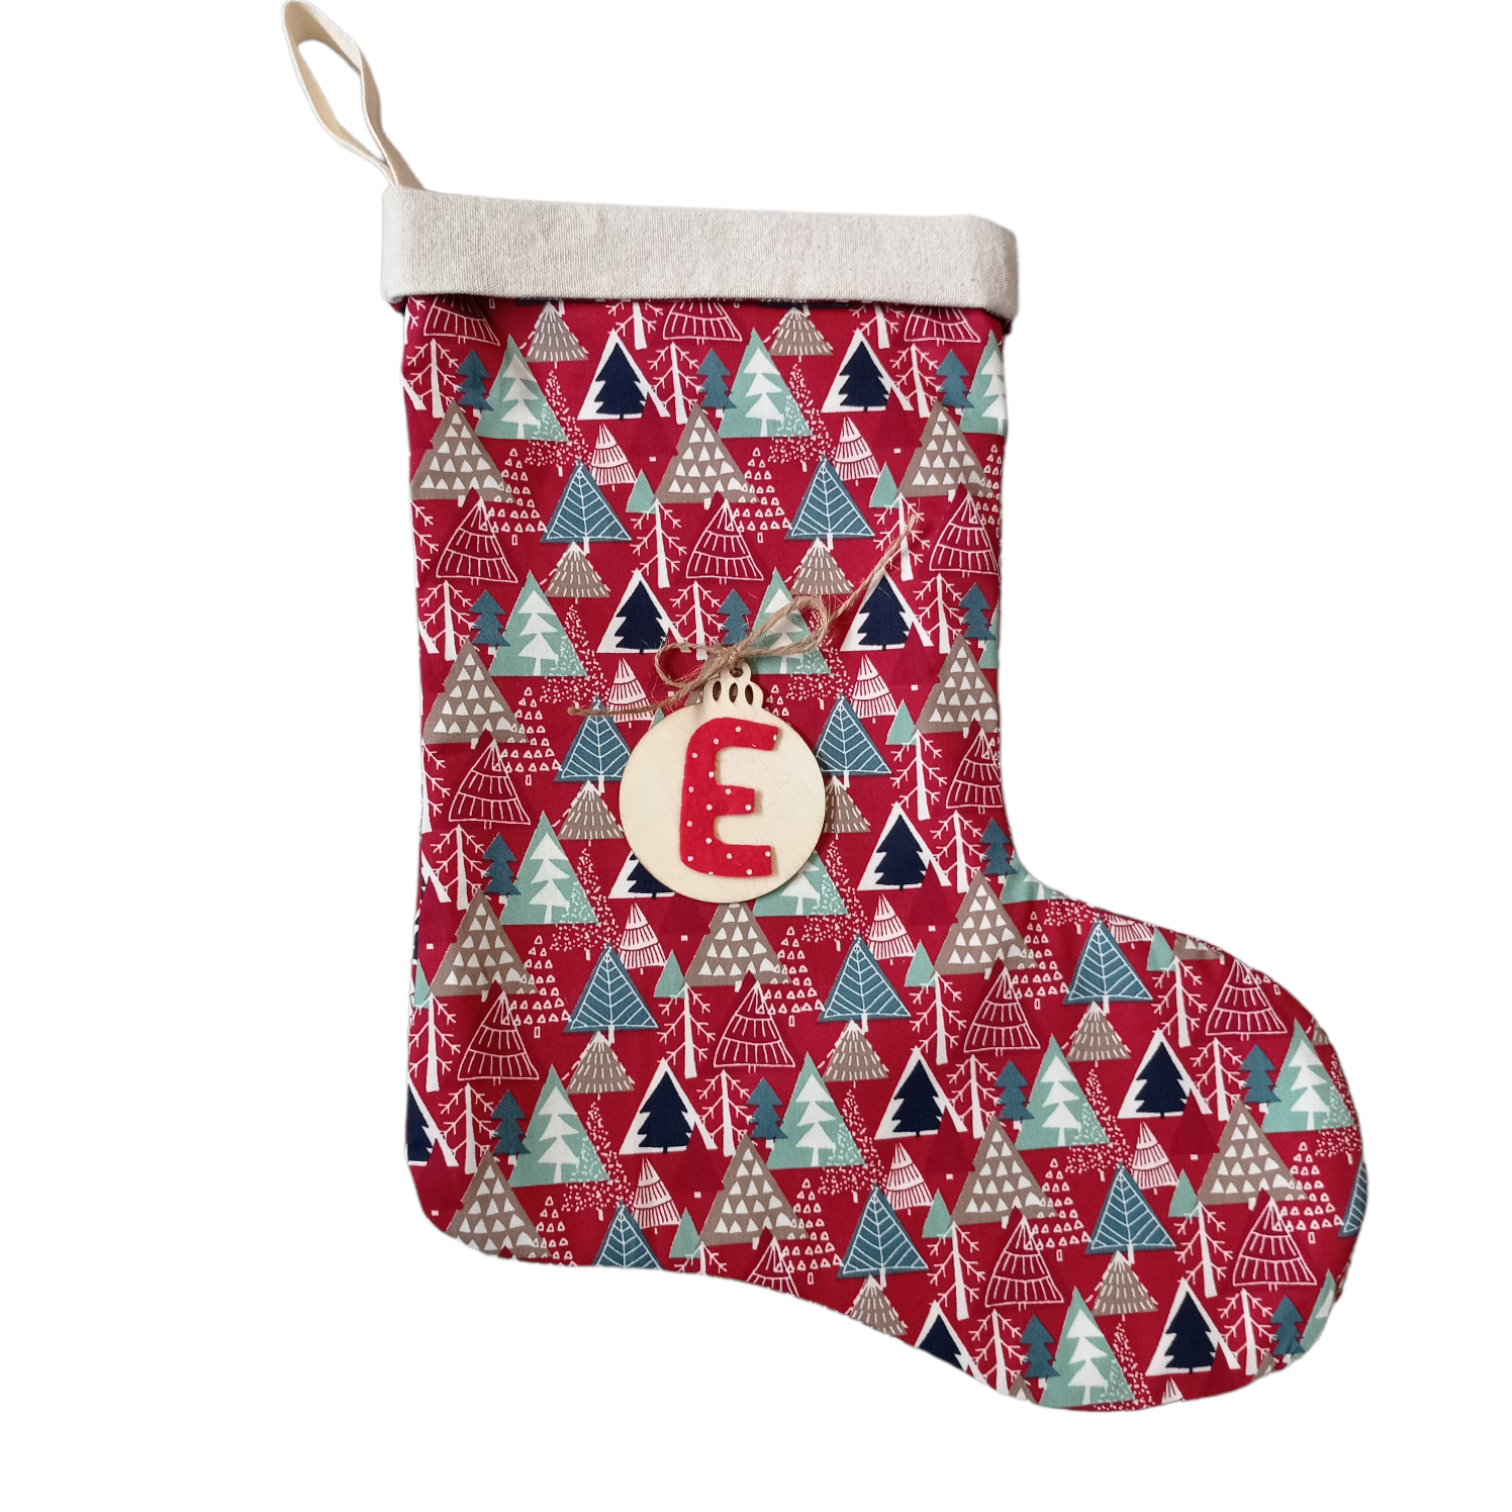 χριστουγεννιάτικη κάλτσα κόκκινη-δεντρακια με μονόγραμμα ξύλινο στολίδι